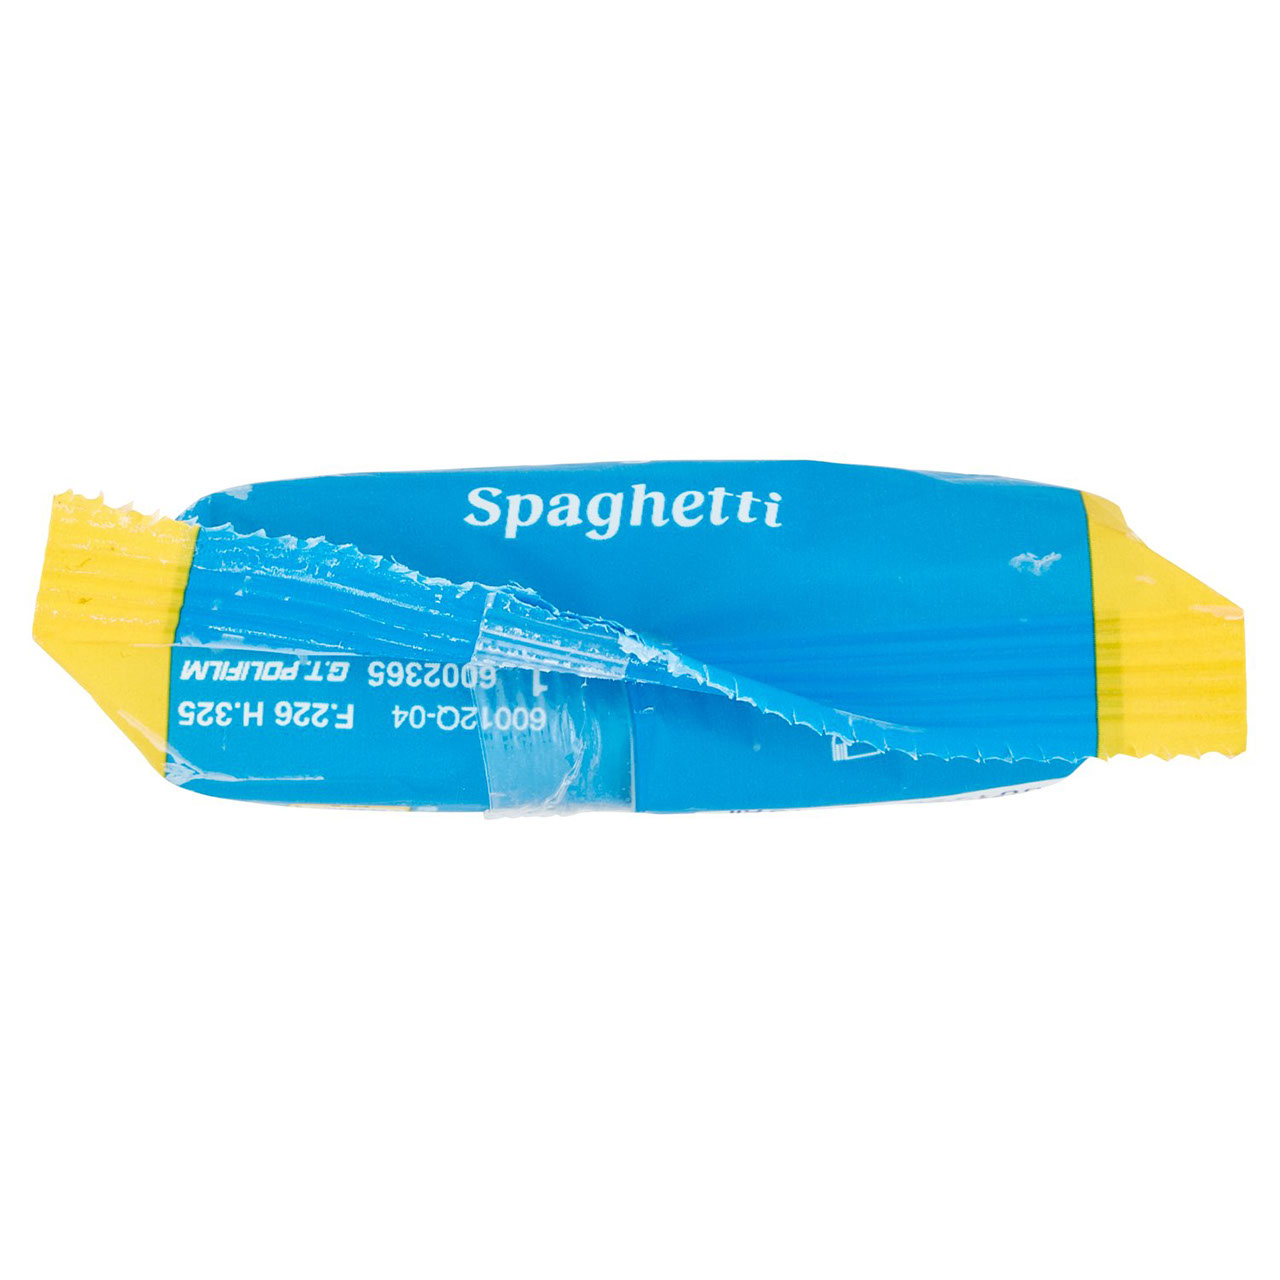 De Cecco Spaghetti n°12 500 g in vendita online